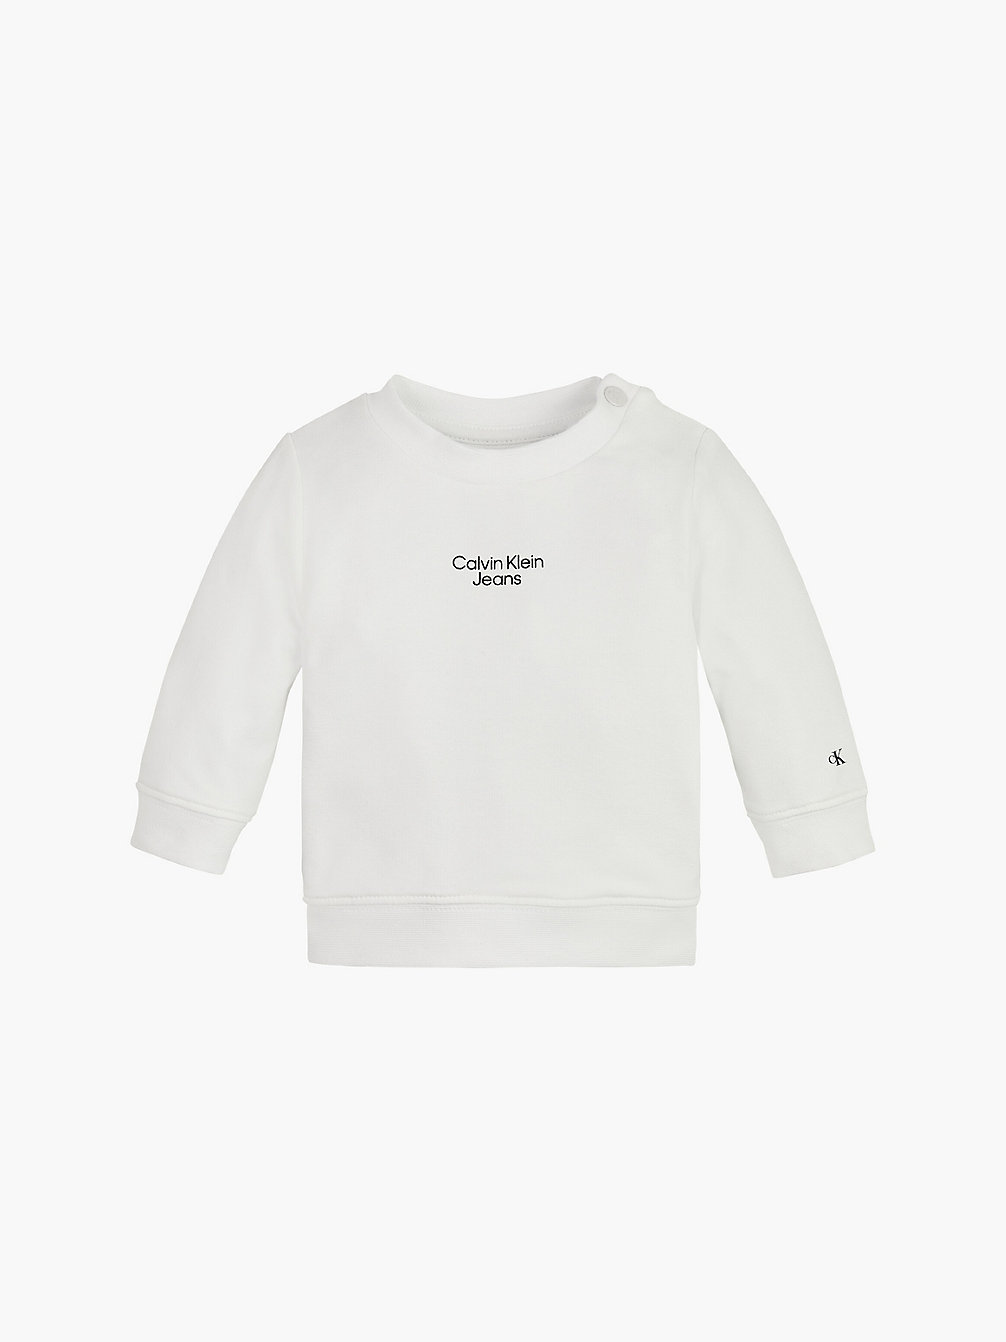 BRIGHT WHITE > Newborn-Sweatshirt Van Biologisch Katoen > undefined newborn - Calvin Klein